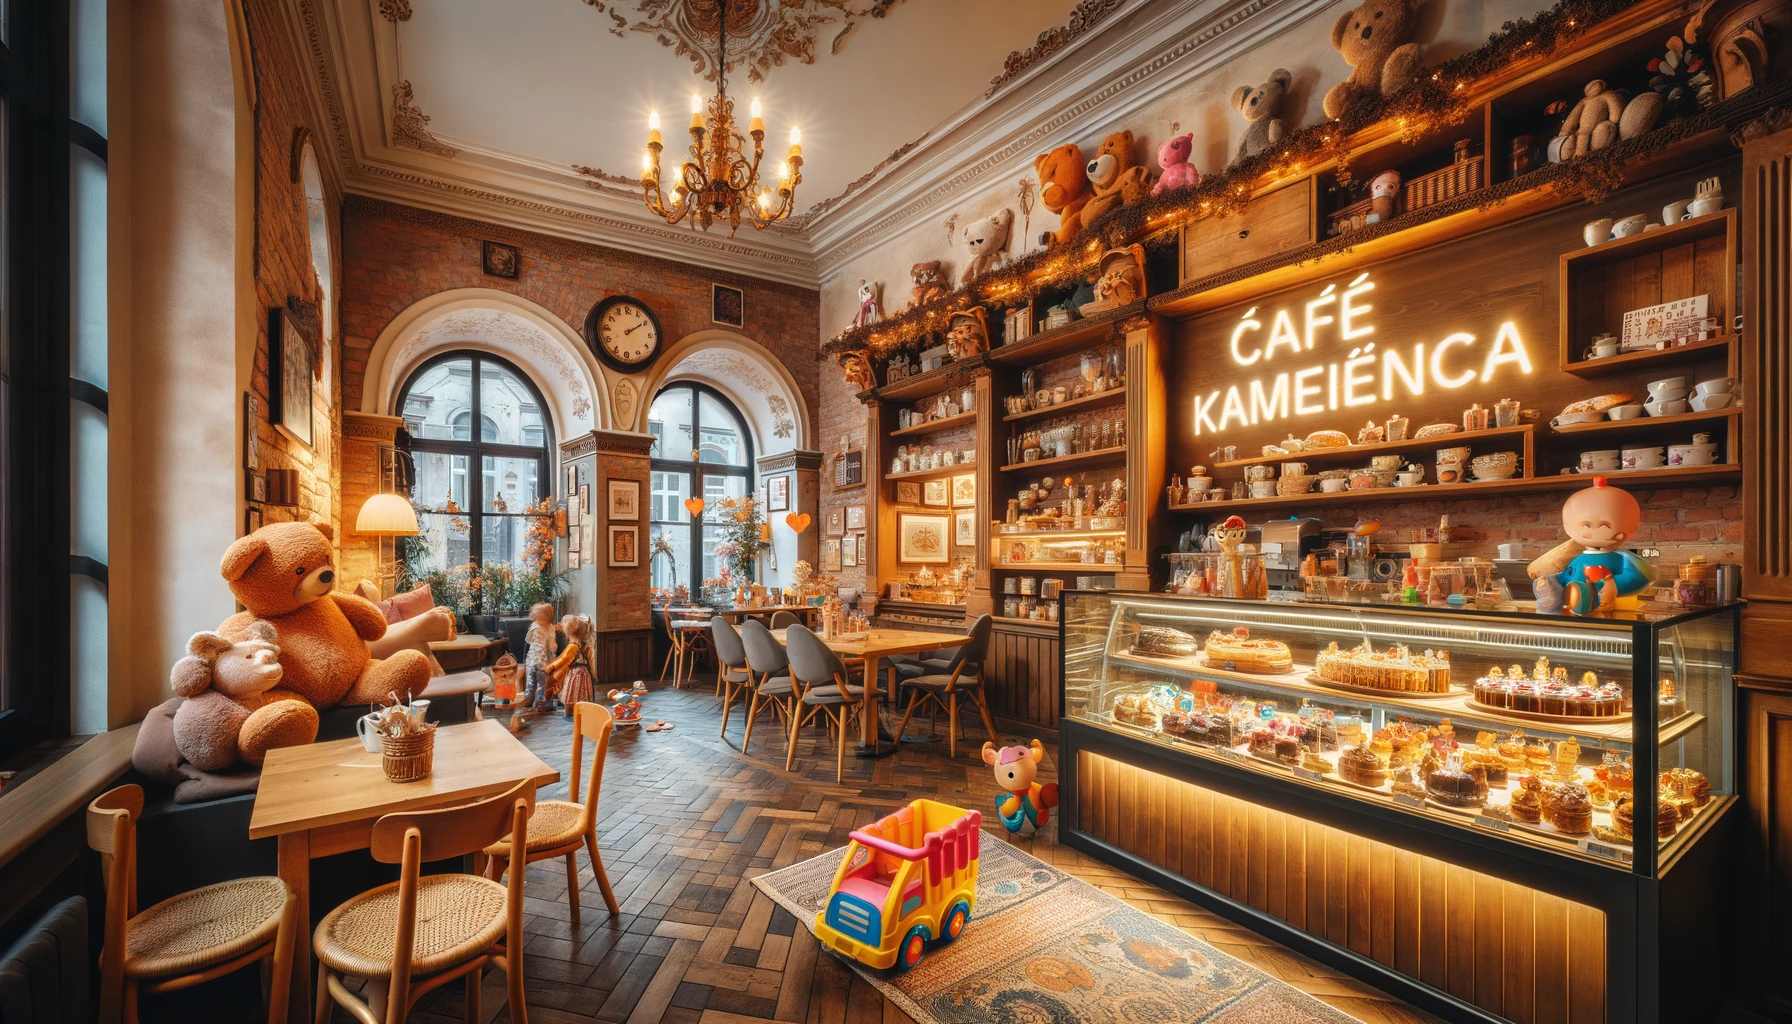 Ciepła i przyjazna atmosfera Café Kamienica w Gdańsku, z przytulnym wnętrzem, pysznymi ciastami i kącikiem dla dzieci